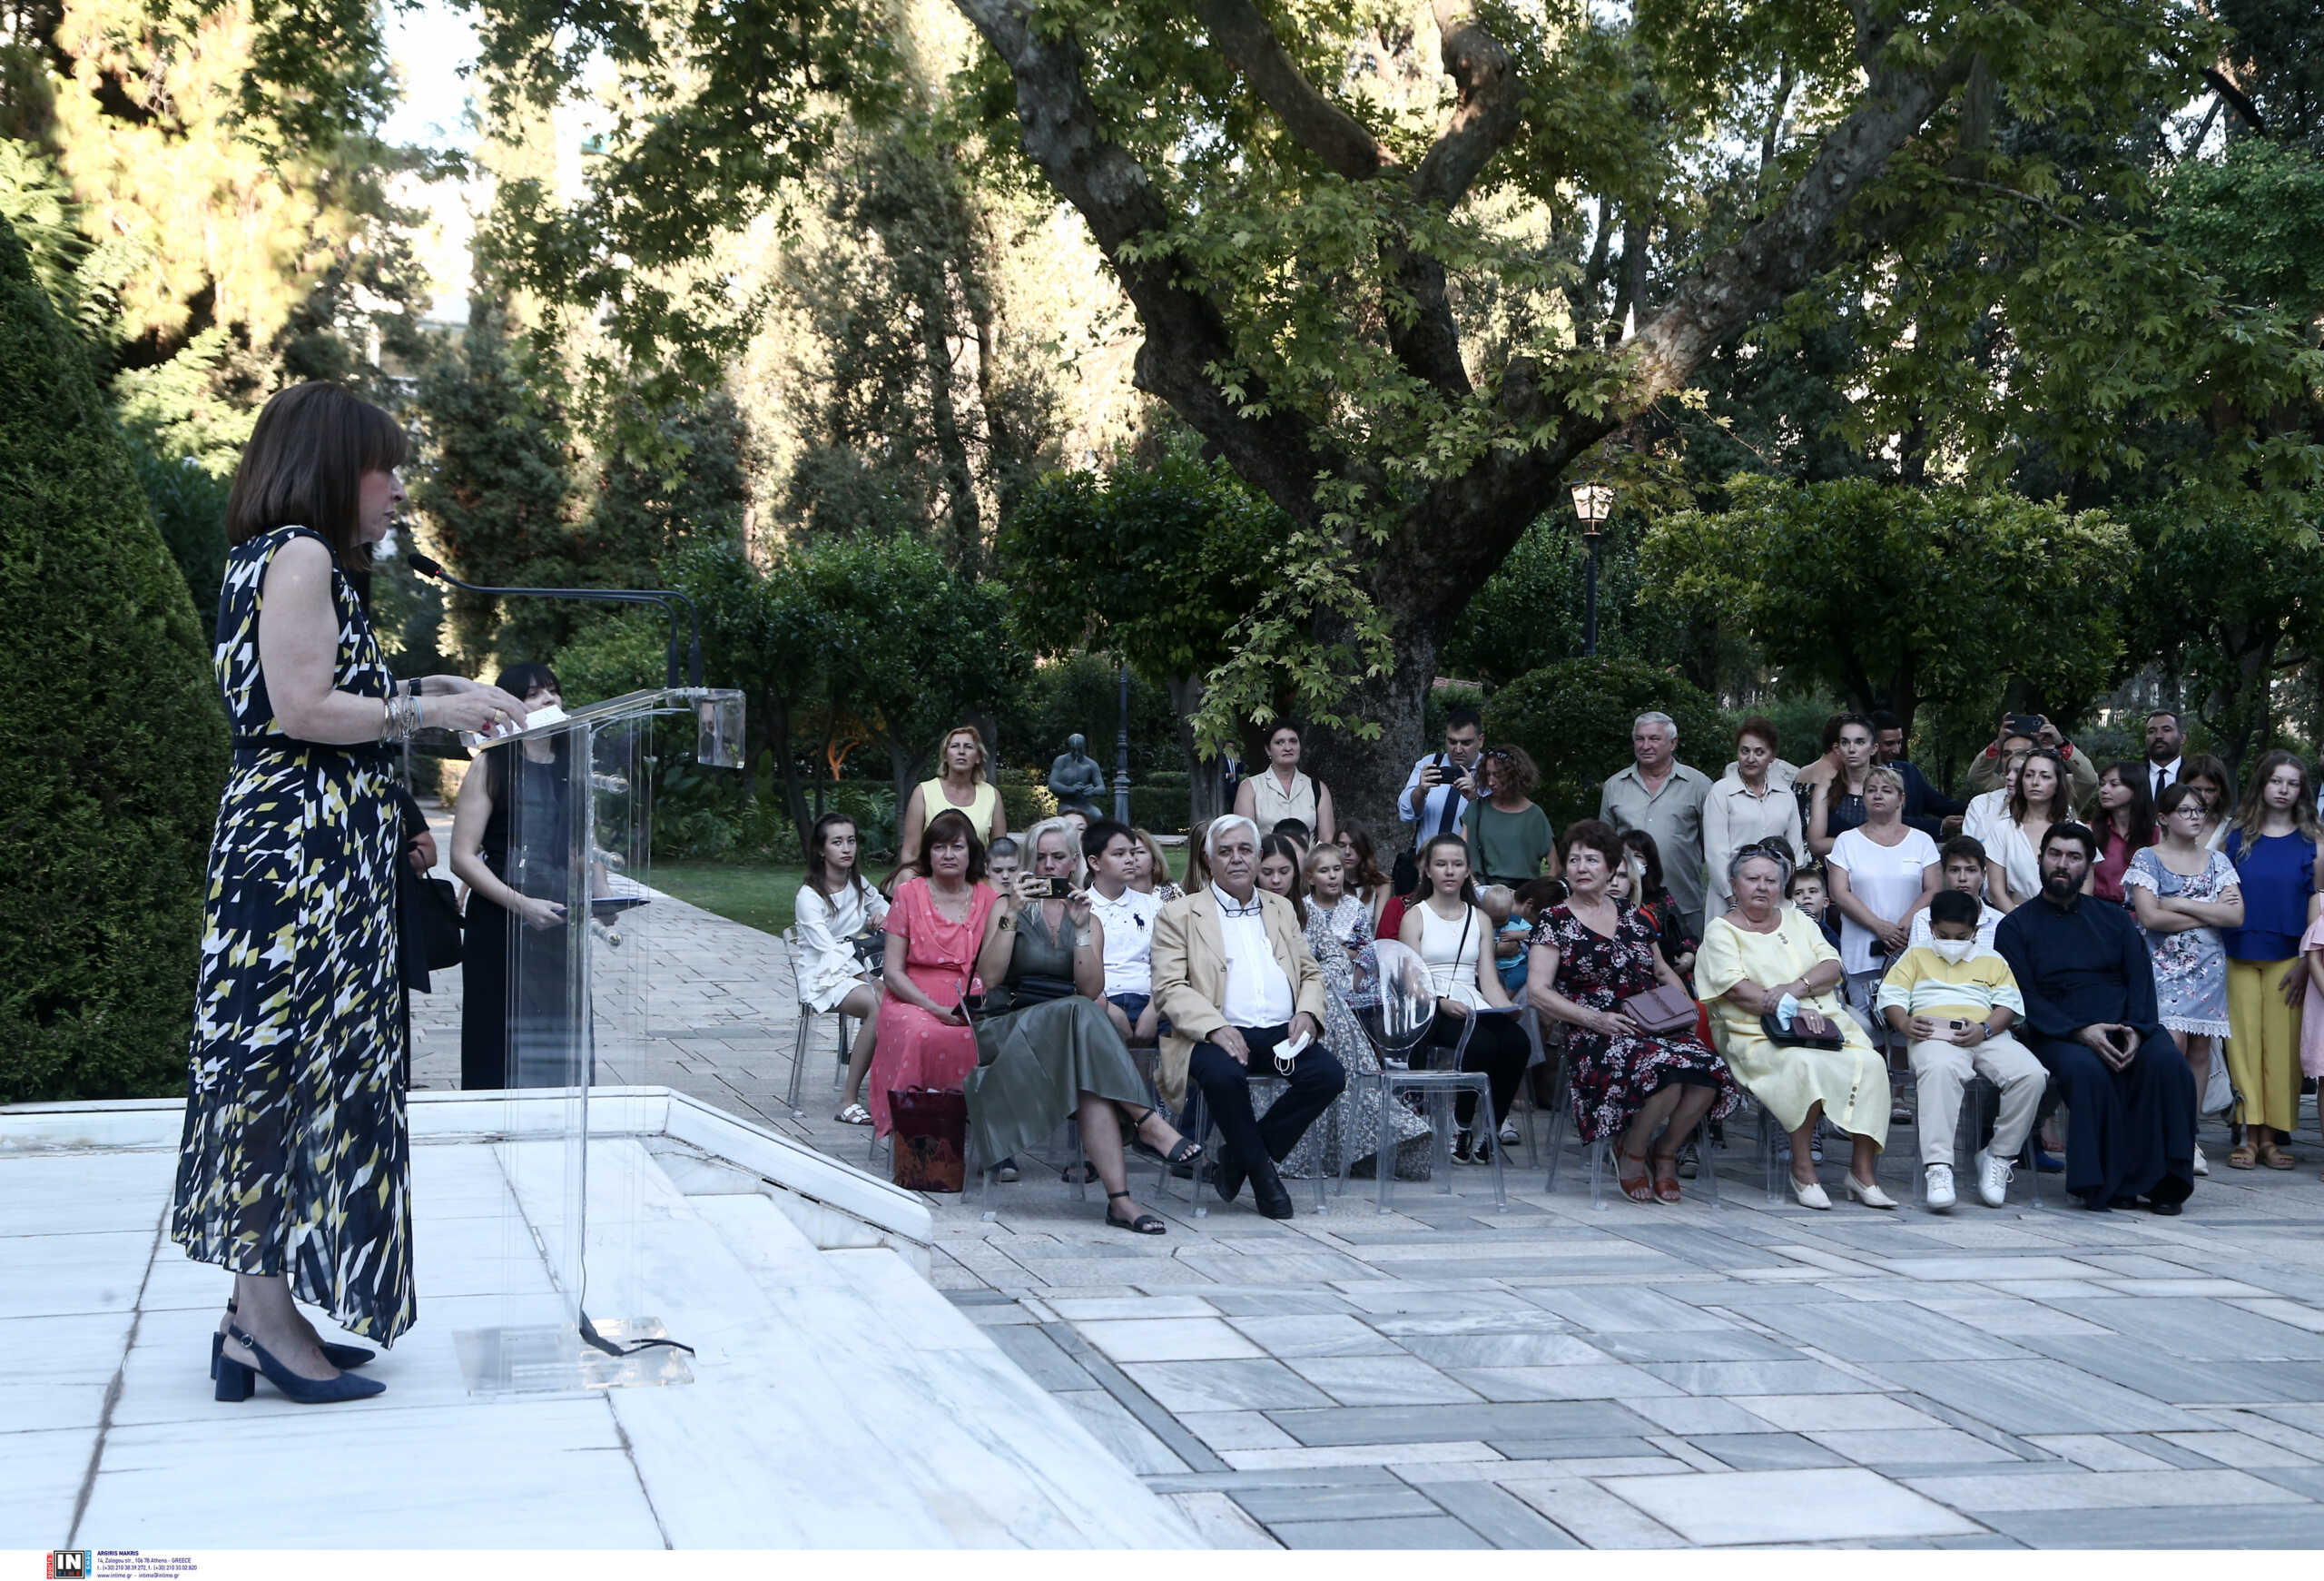 Η Κατερίνα Σακελλαροπούλου υποδέχθηκε στον κήπο του Προεδρικού Μεγάρου Ουκρανούς που φιλοξενούνται στην Ελλάδα